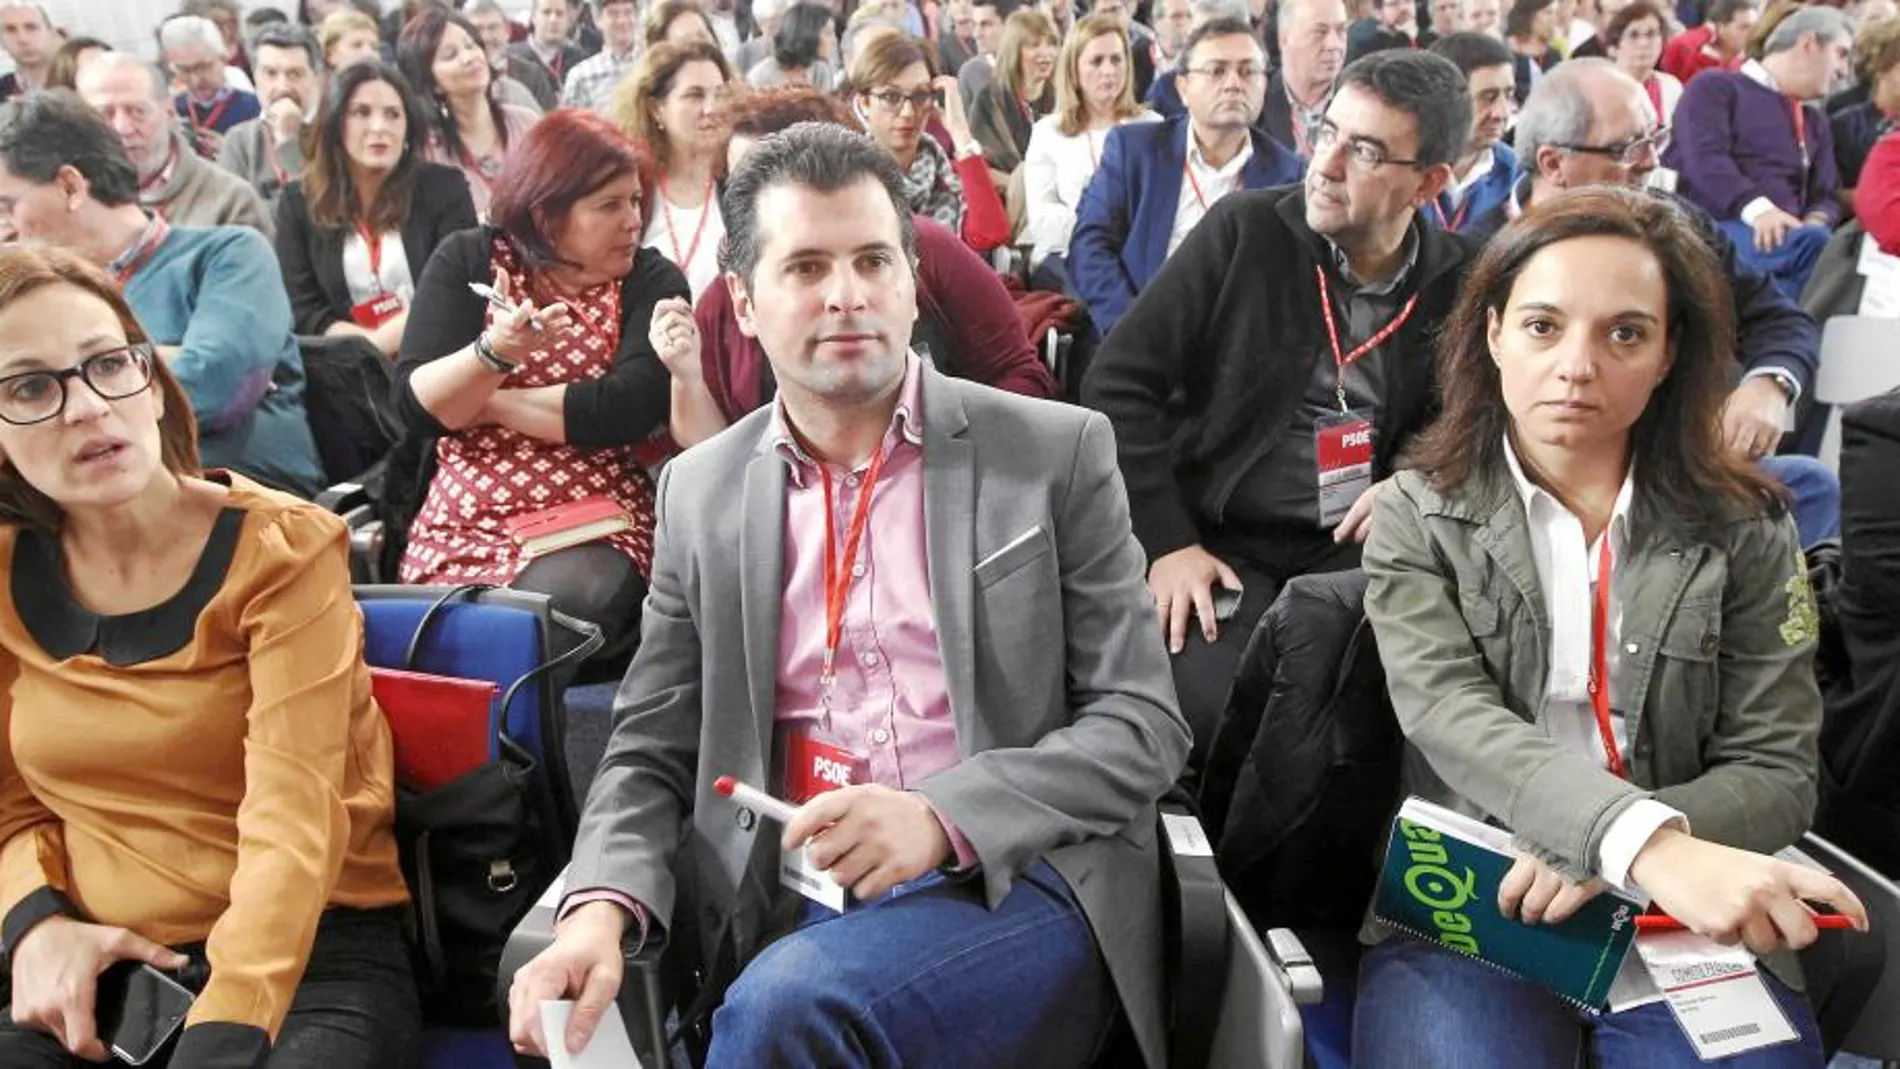 El secretario general del PSOE en Castilla y León, el burgalés LUis Tudanca, en primer término durante un instante del Comité Federal del partido del puño y la rosa celebrado ayer en a capital de España